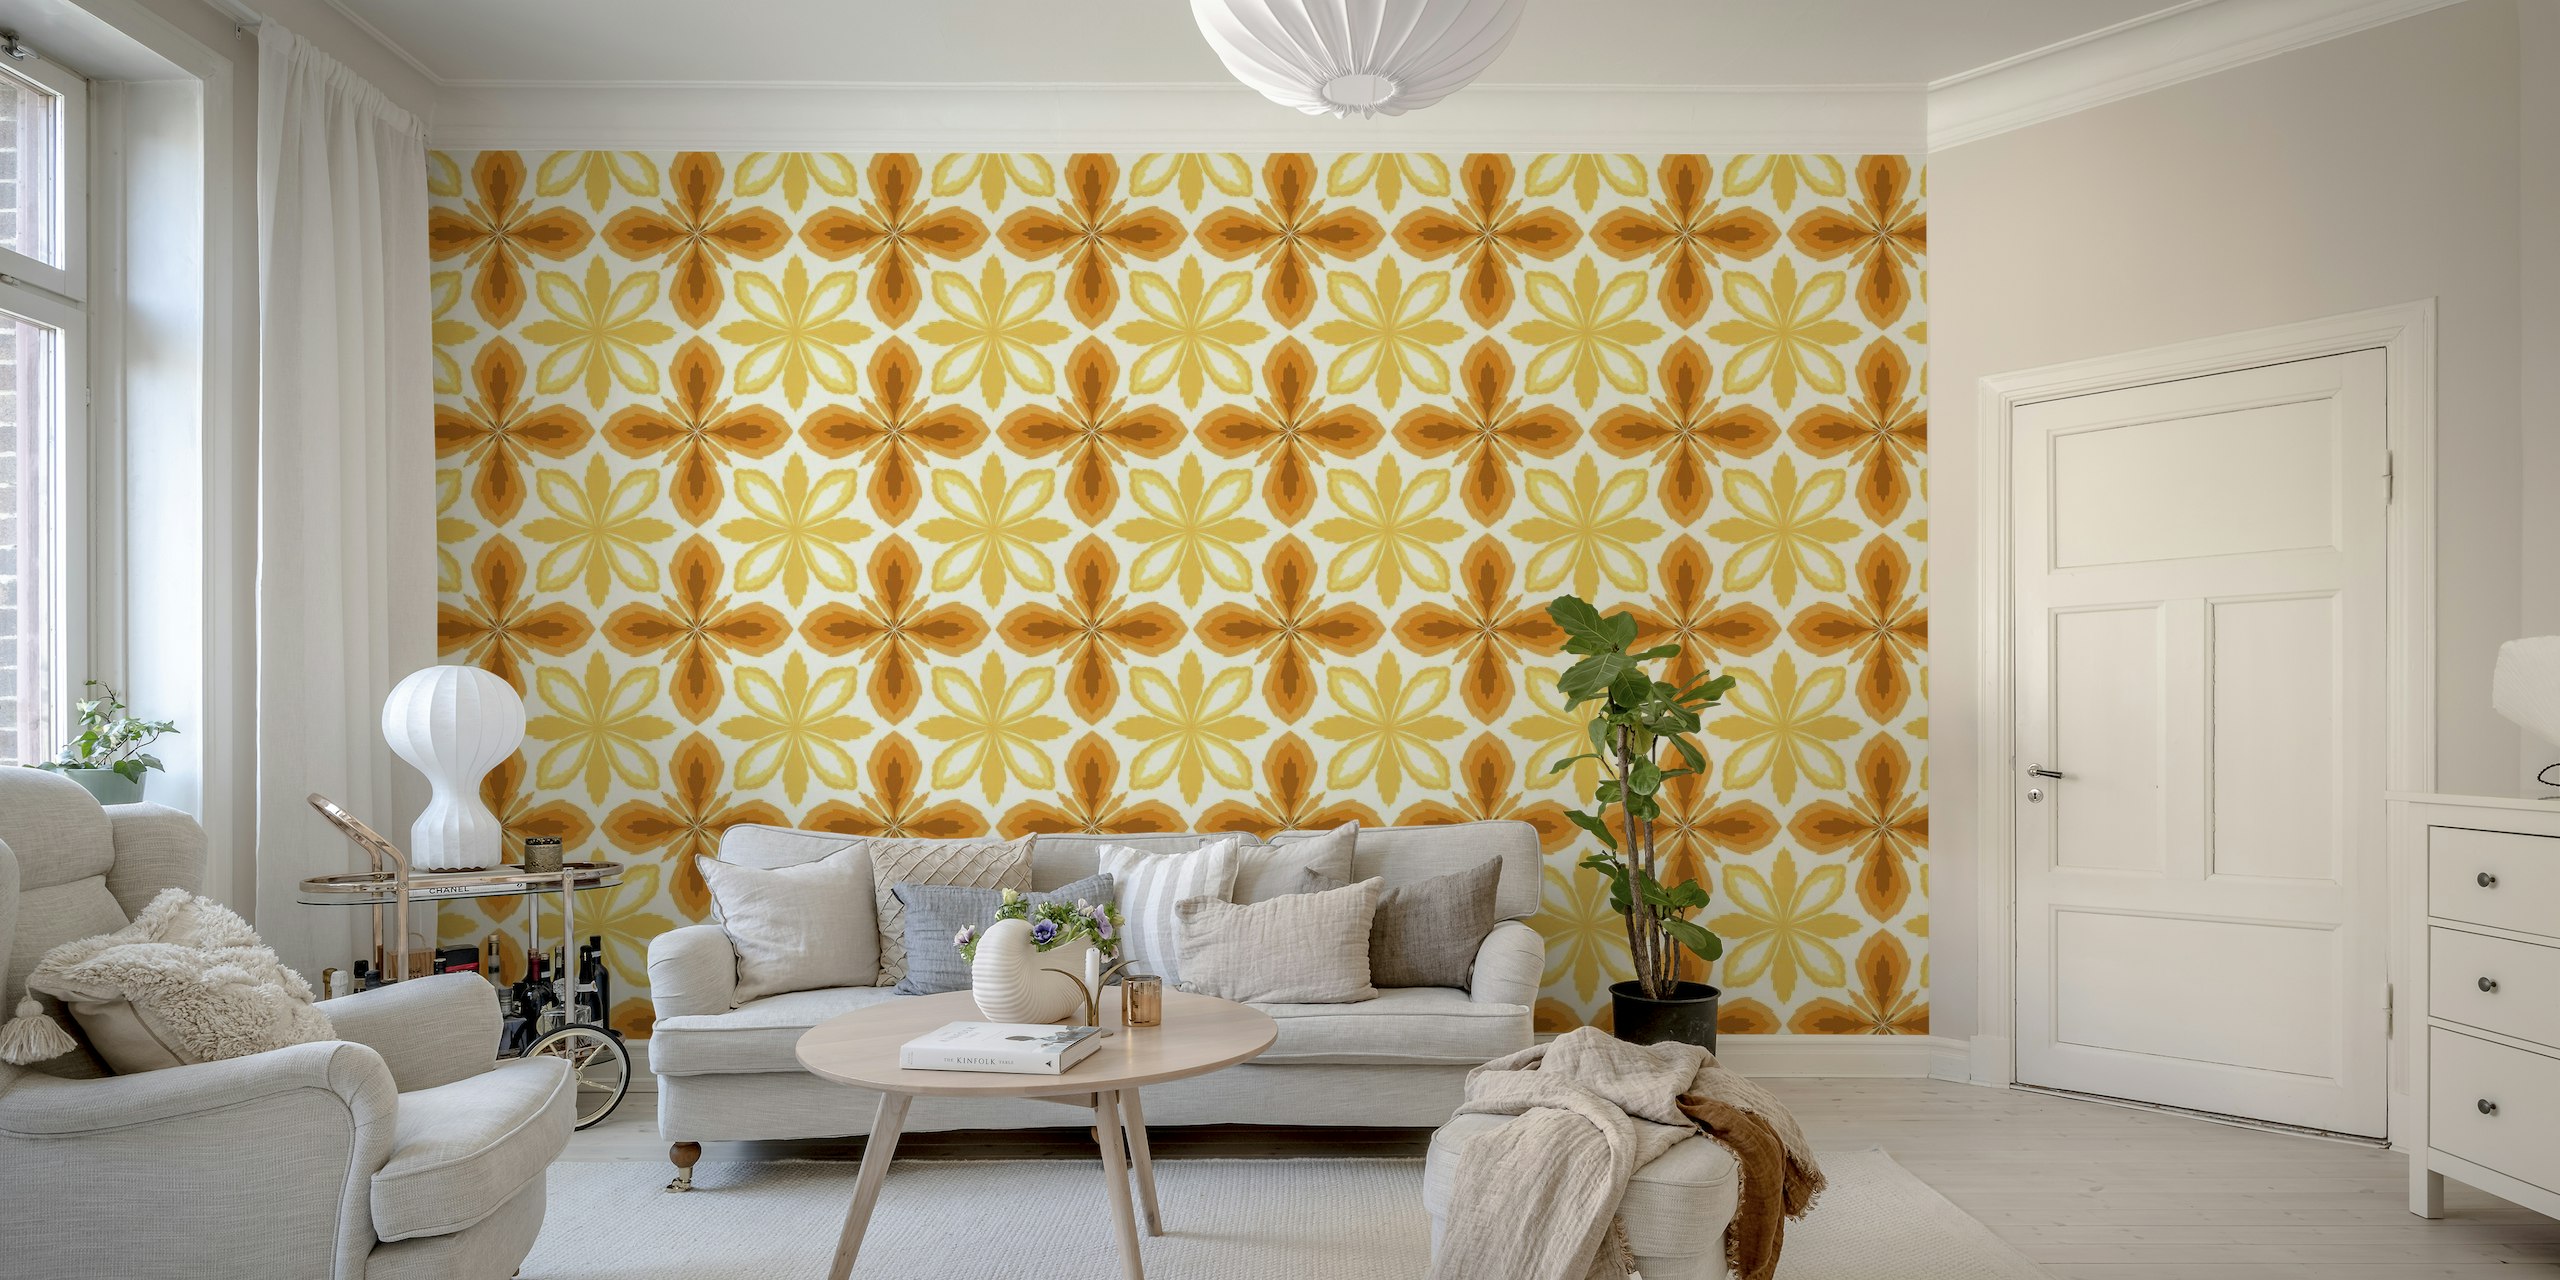 Ornate tiles, yellow and orange 2 papel pintado